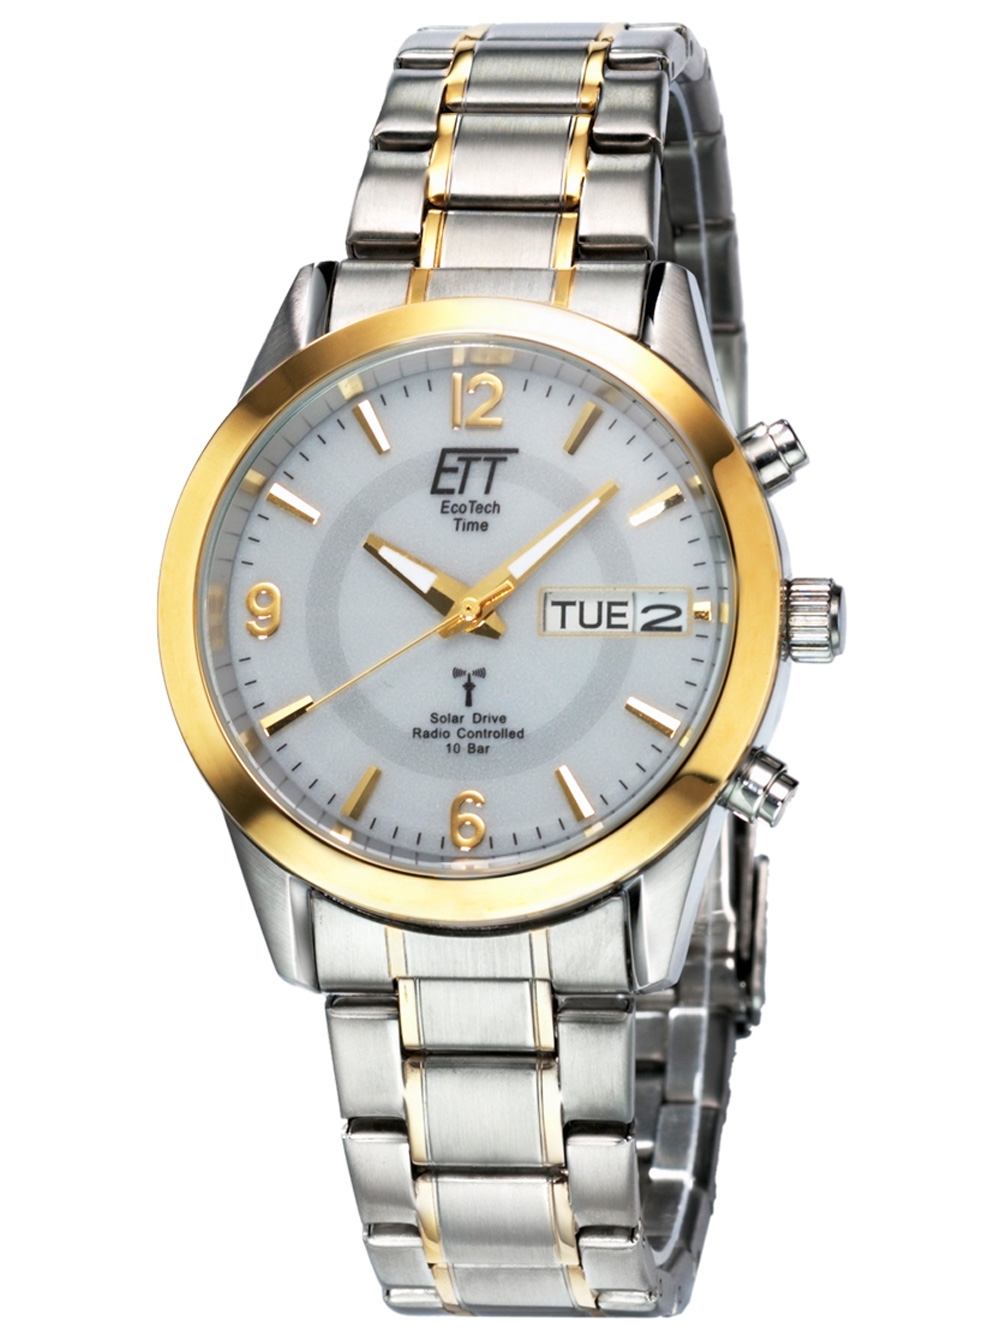 Наручные | цены, Купить Rozetka™ часы золотистые серебристые + - доставка в часы Украине онлайн широкий наручные Time Tech по выбор, доступные Eco